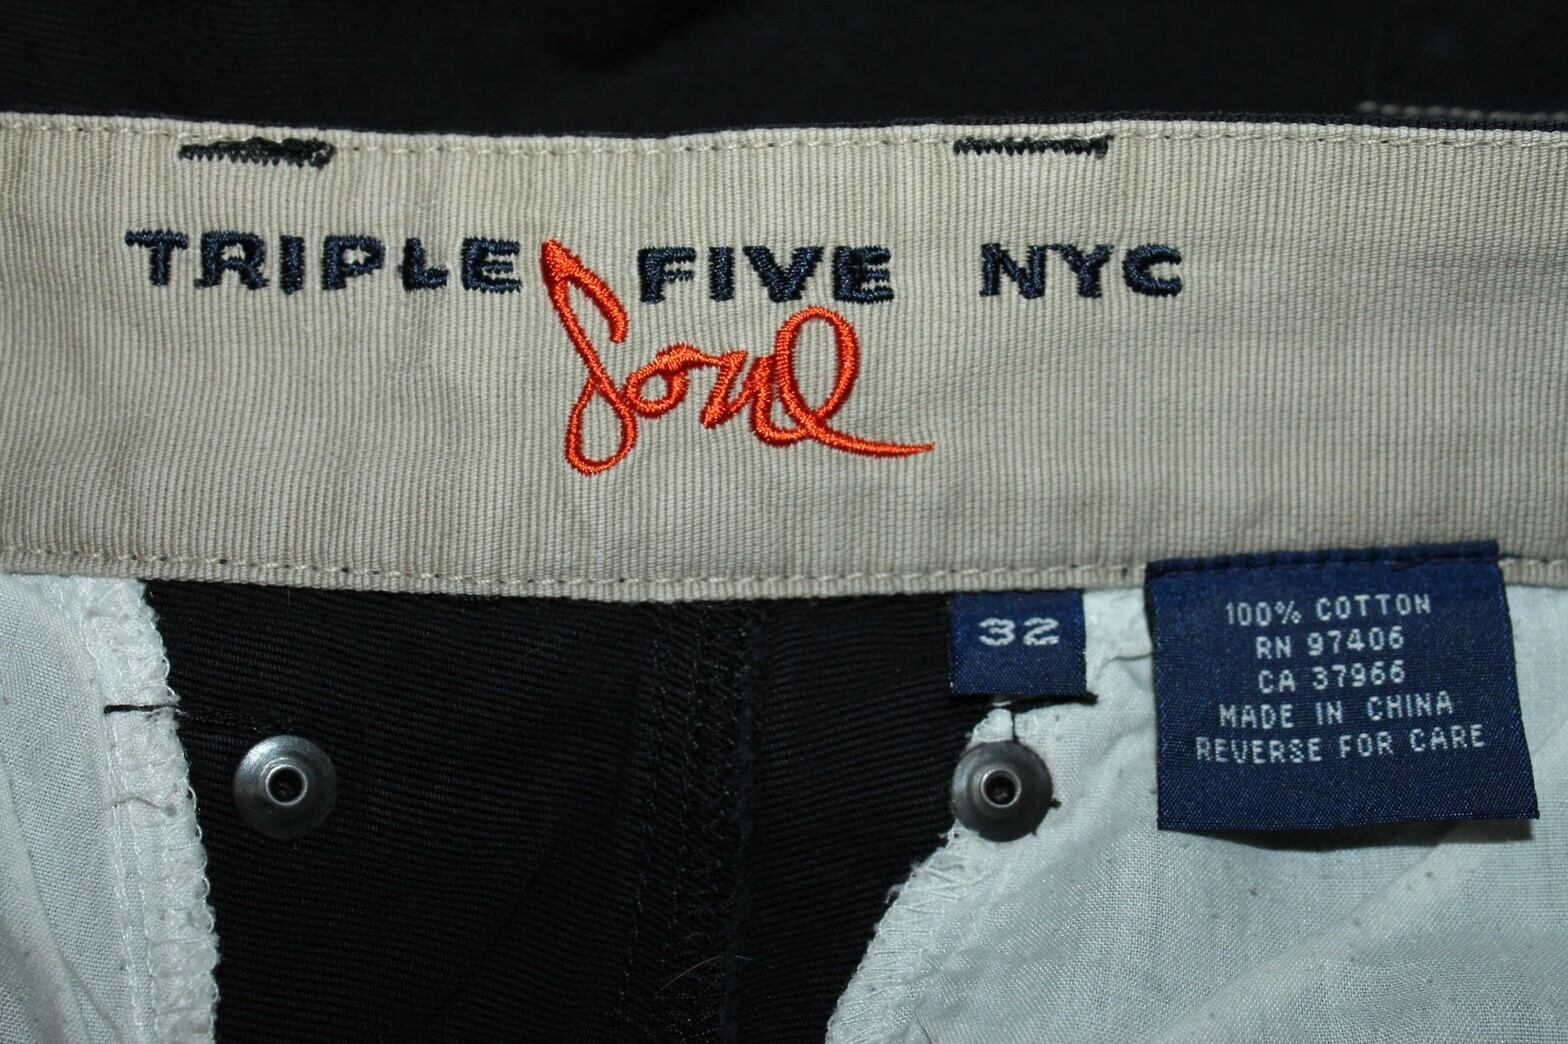 90's TRIPLE FIVE SOUL NYC  PANTS